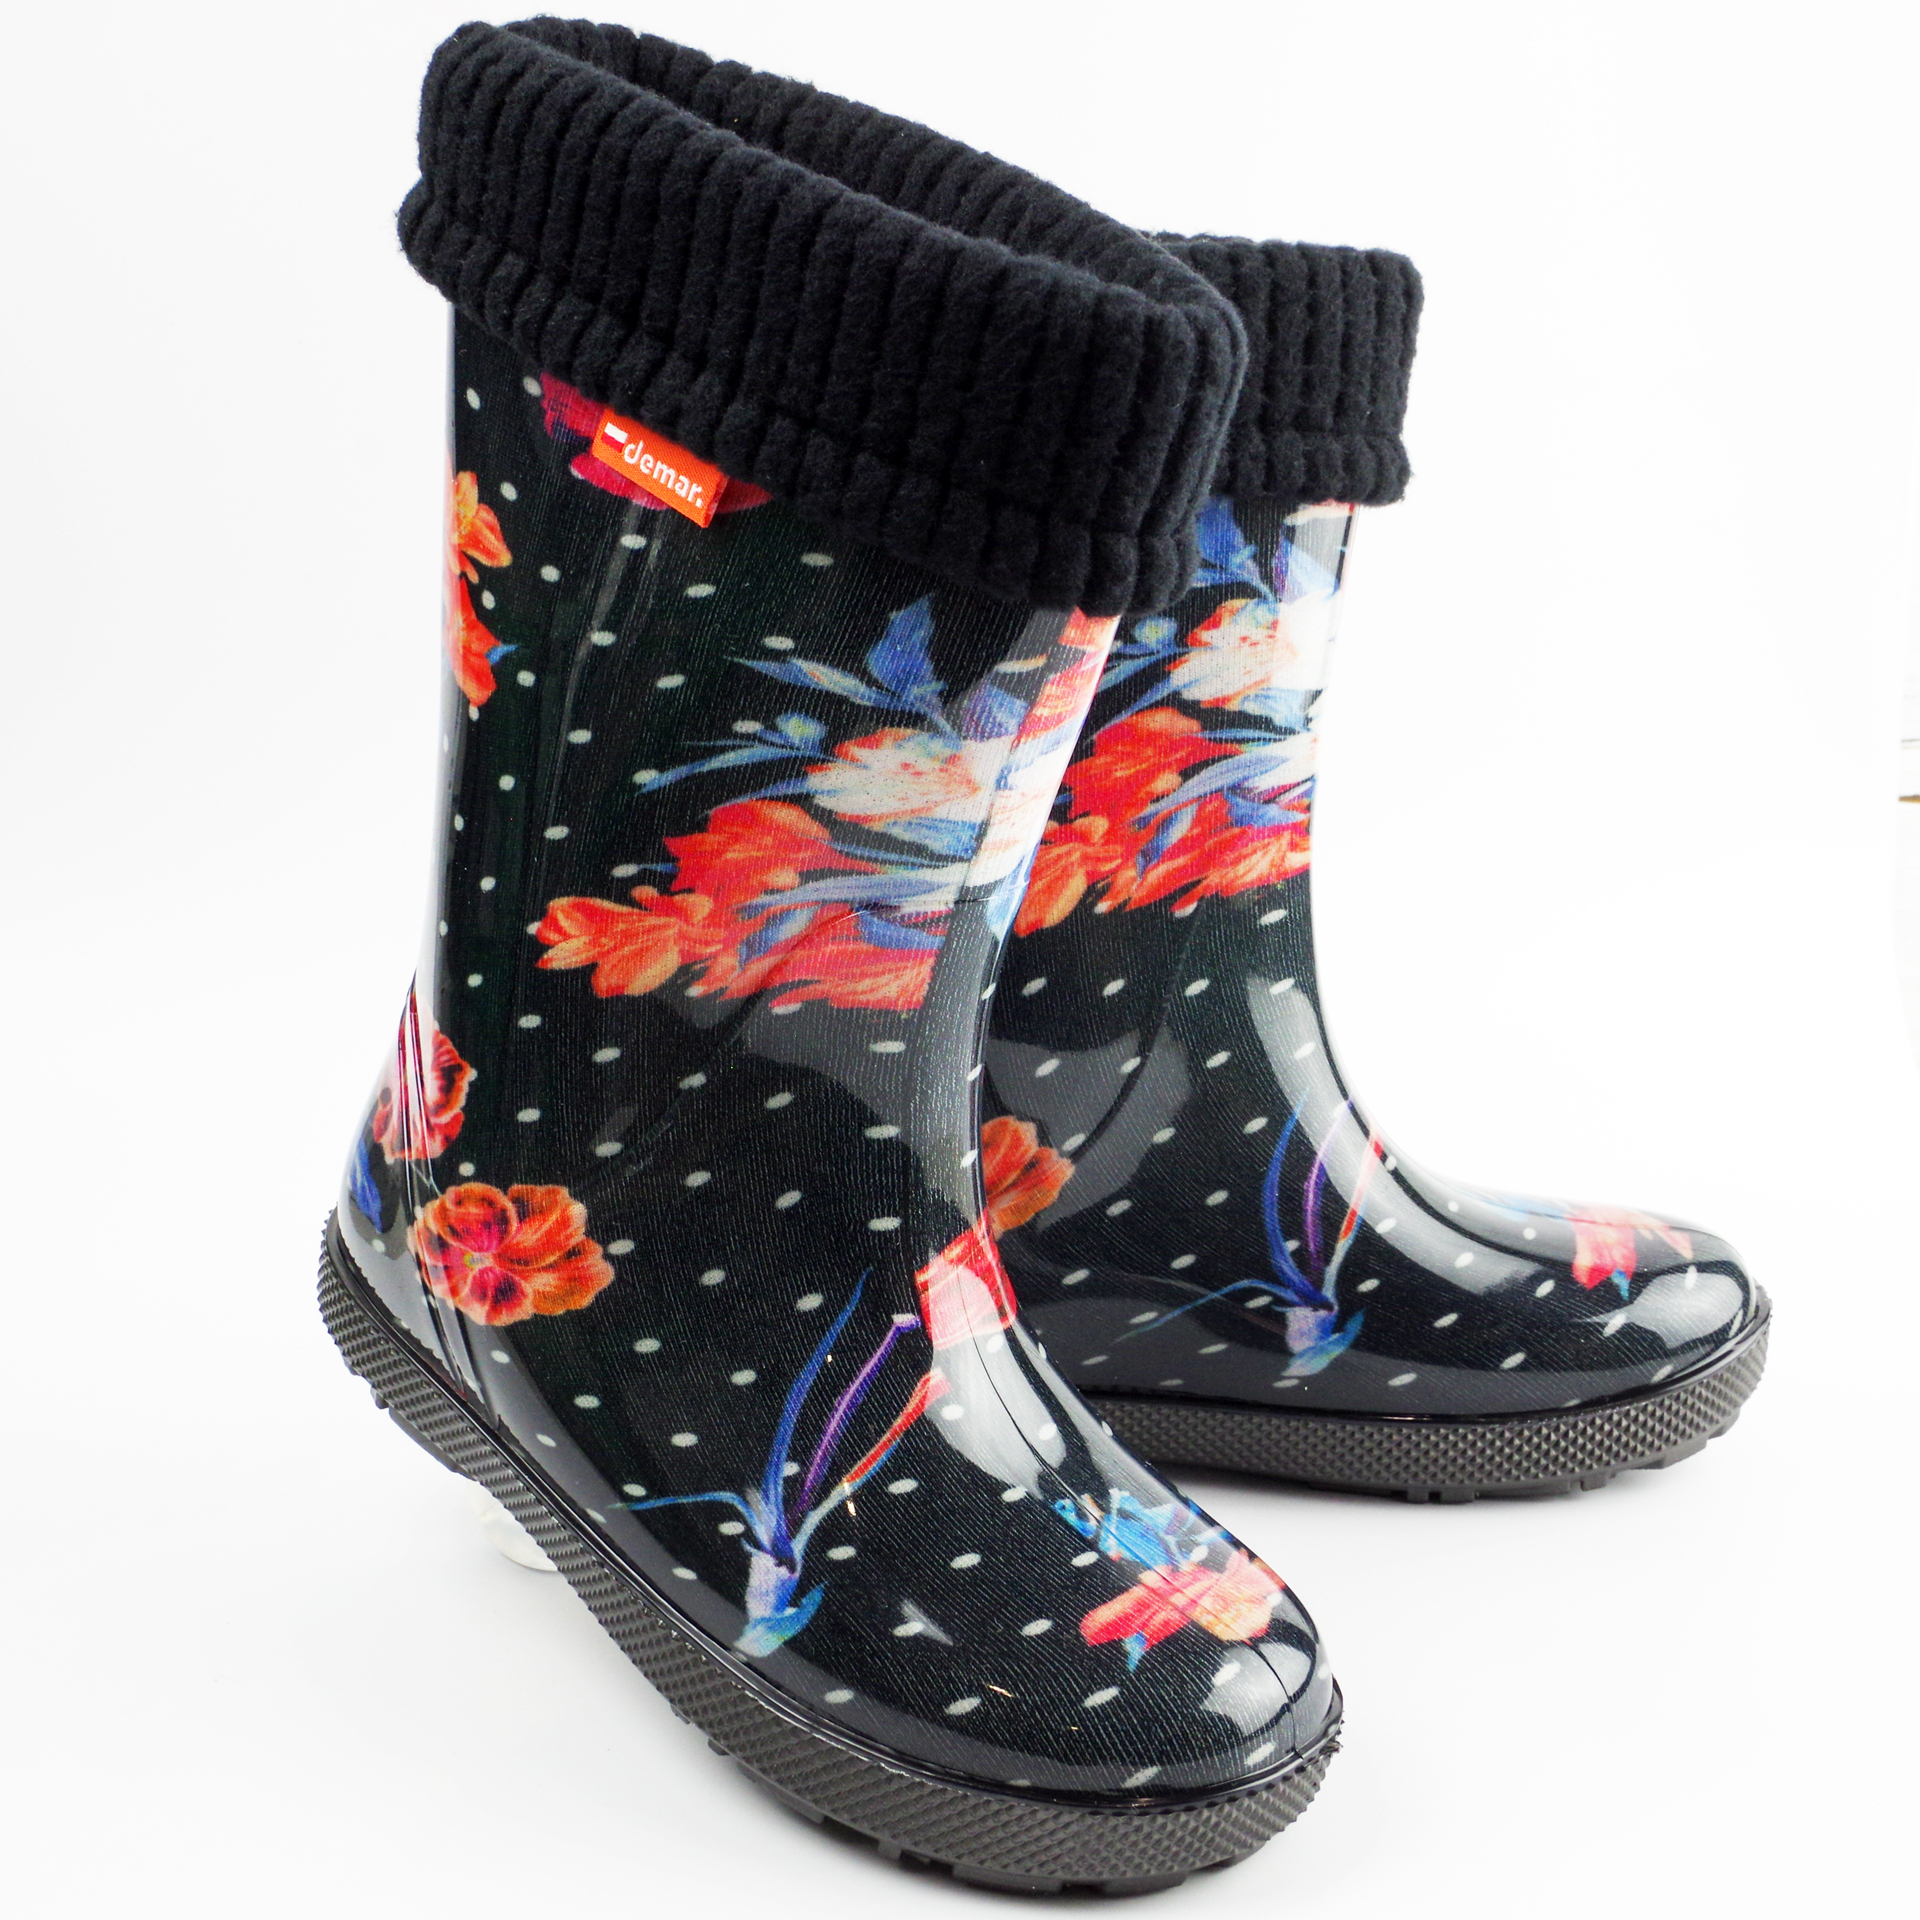 Резиновые сапоги Demar цветы (2166) - обувь для девочек в магазине Соул Кидс. Фото 2